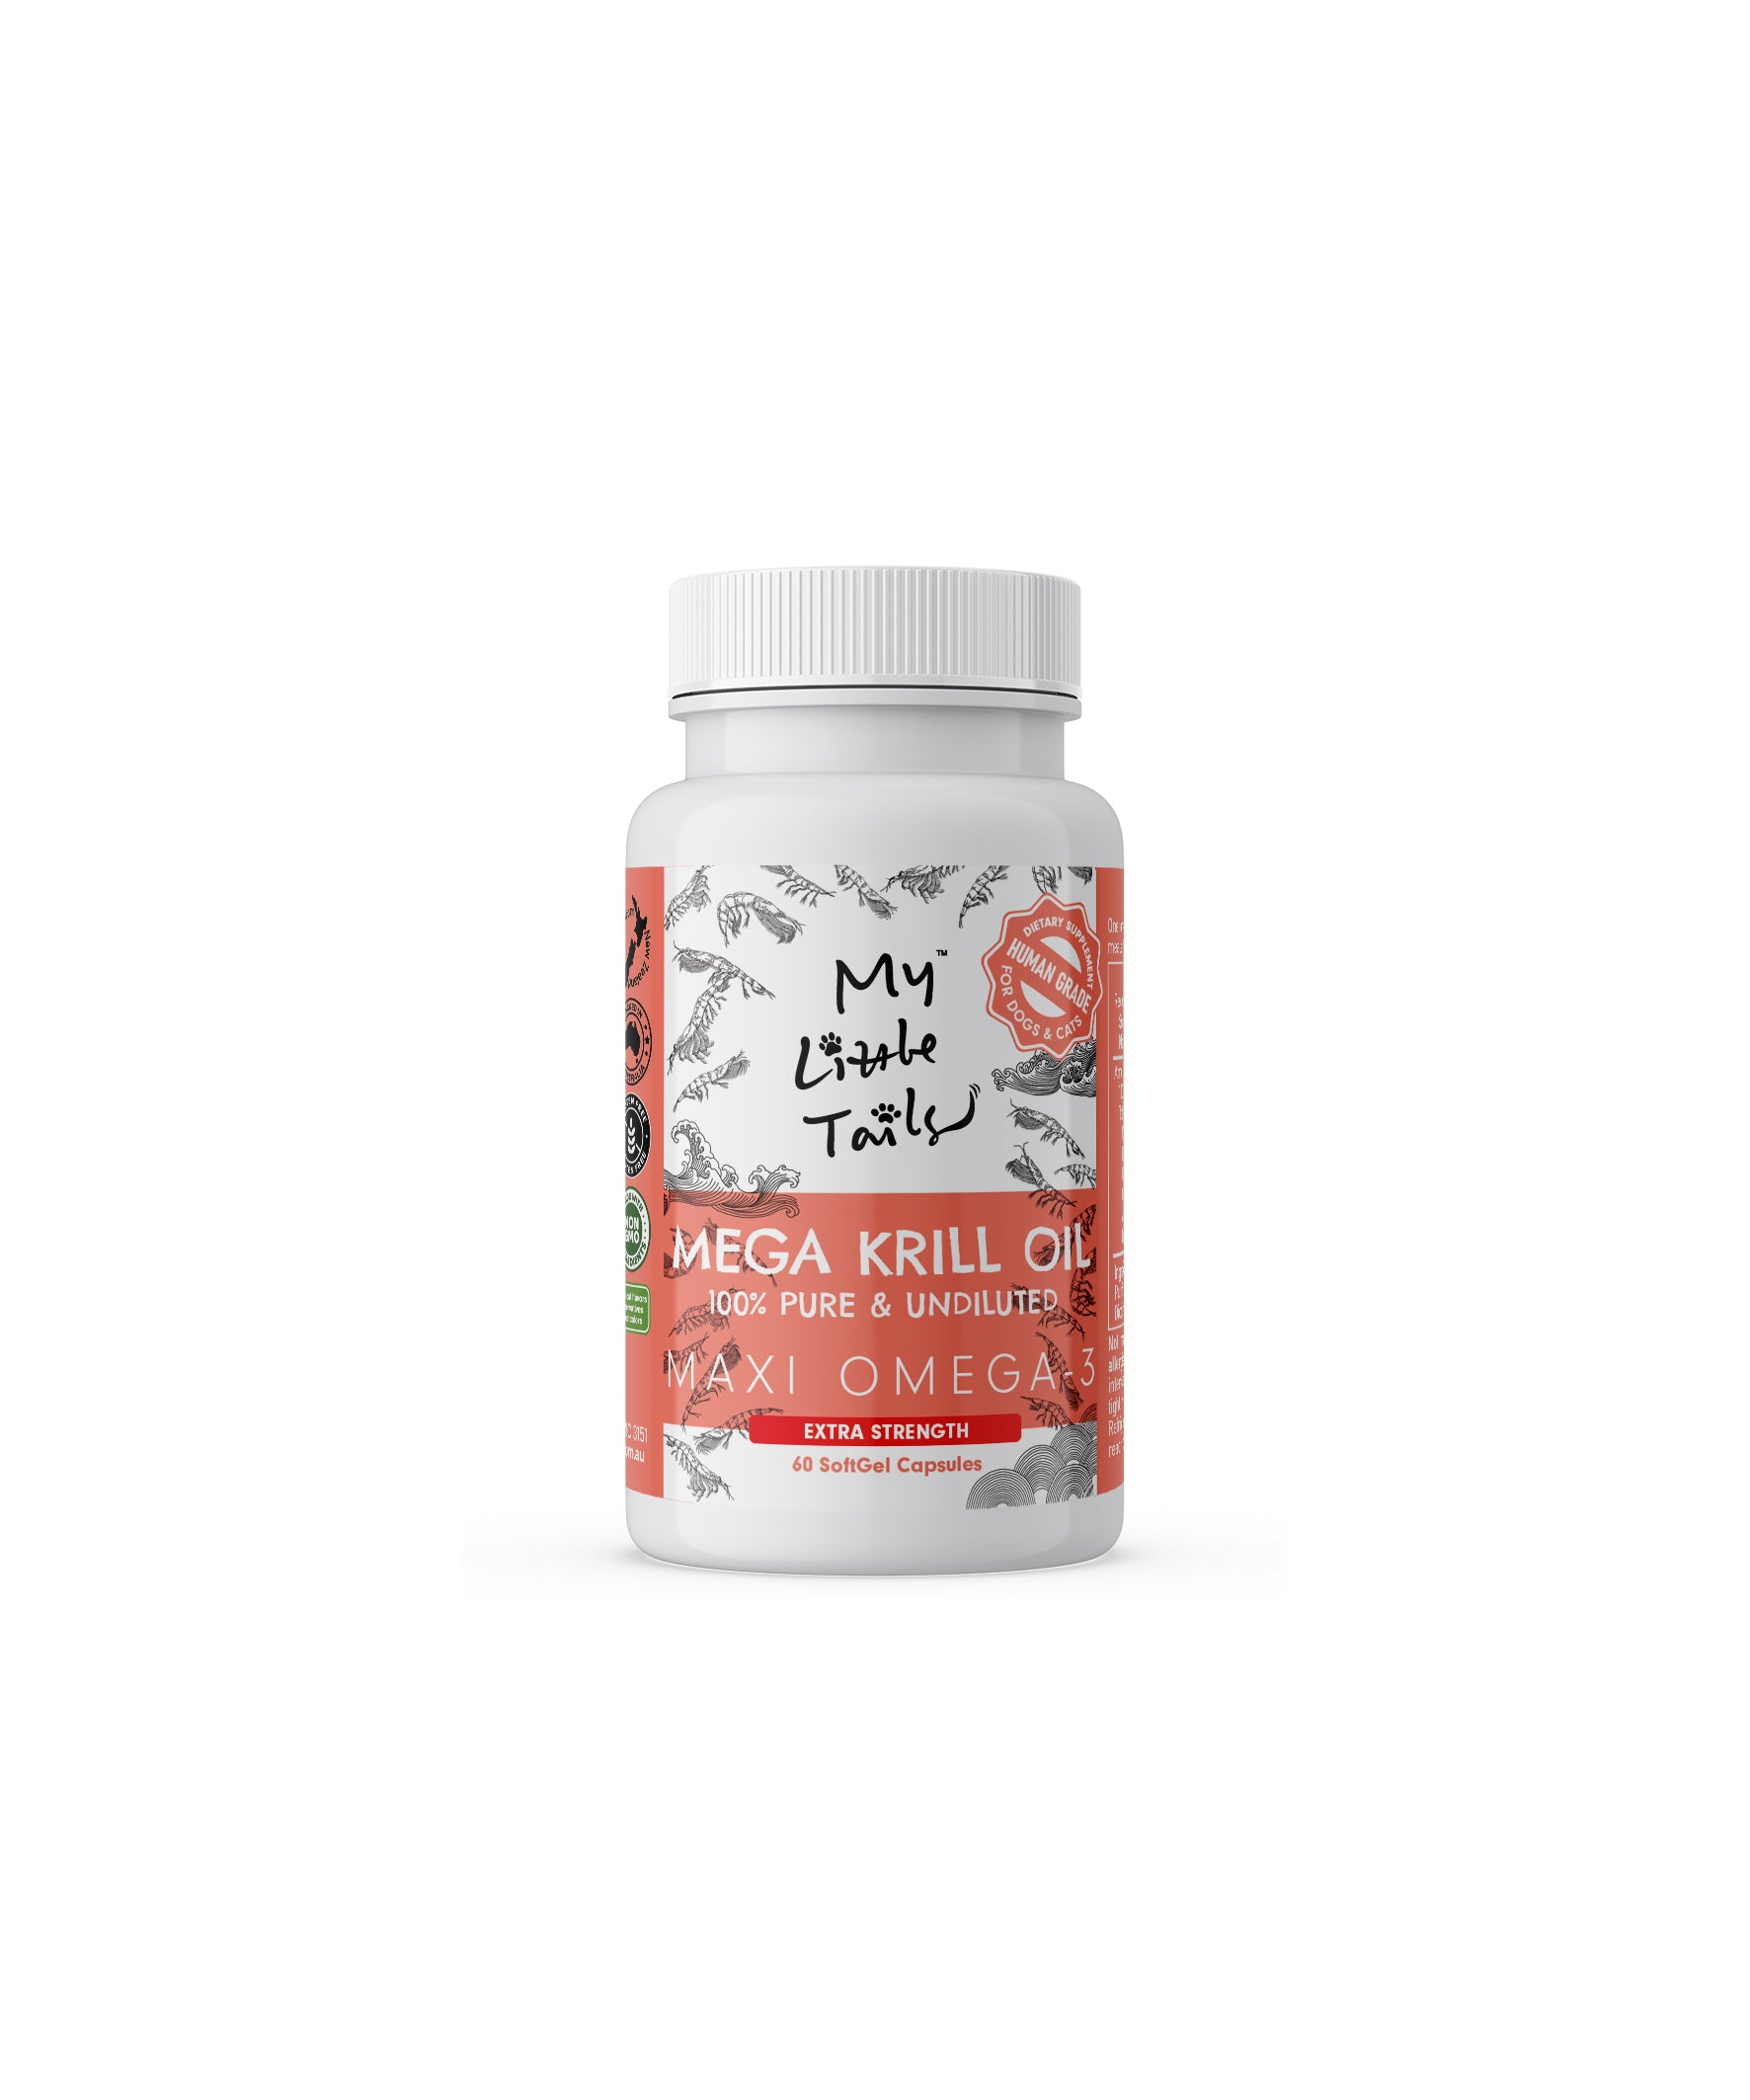 Krll Oil for Dogs Skin & Coat Omega 3